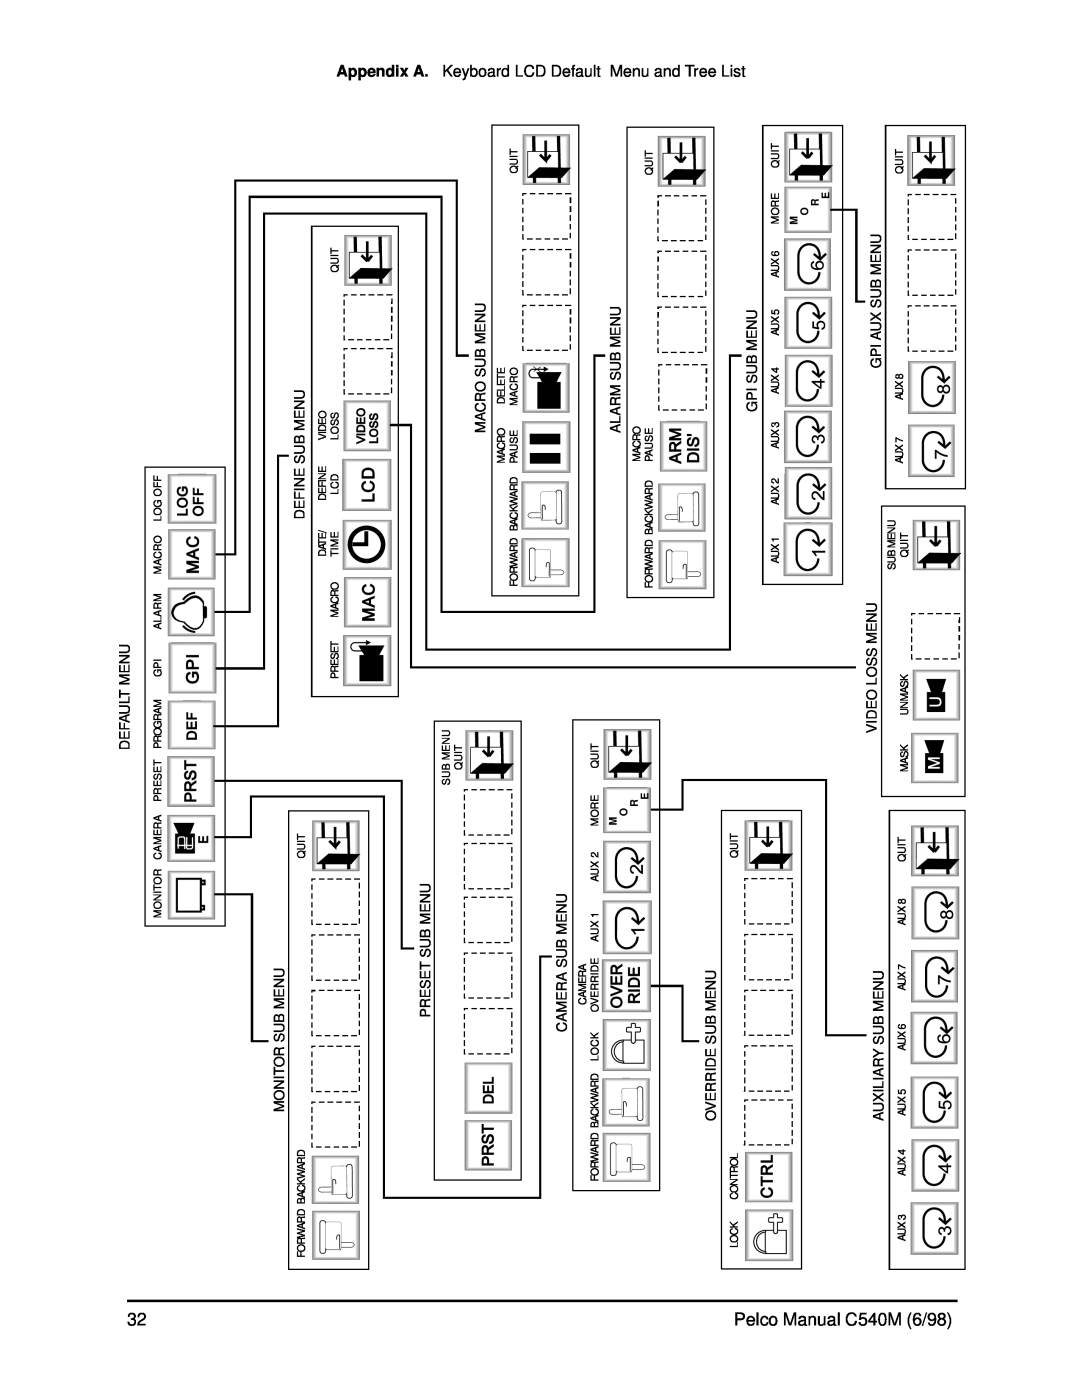 Pelco CM9760-KBR, C540M (6/98) operation manual Pelco Manual C540M 6/98 